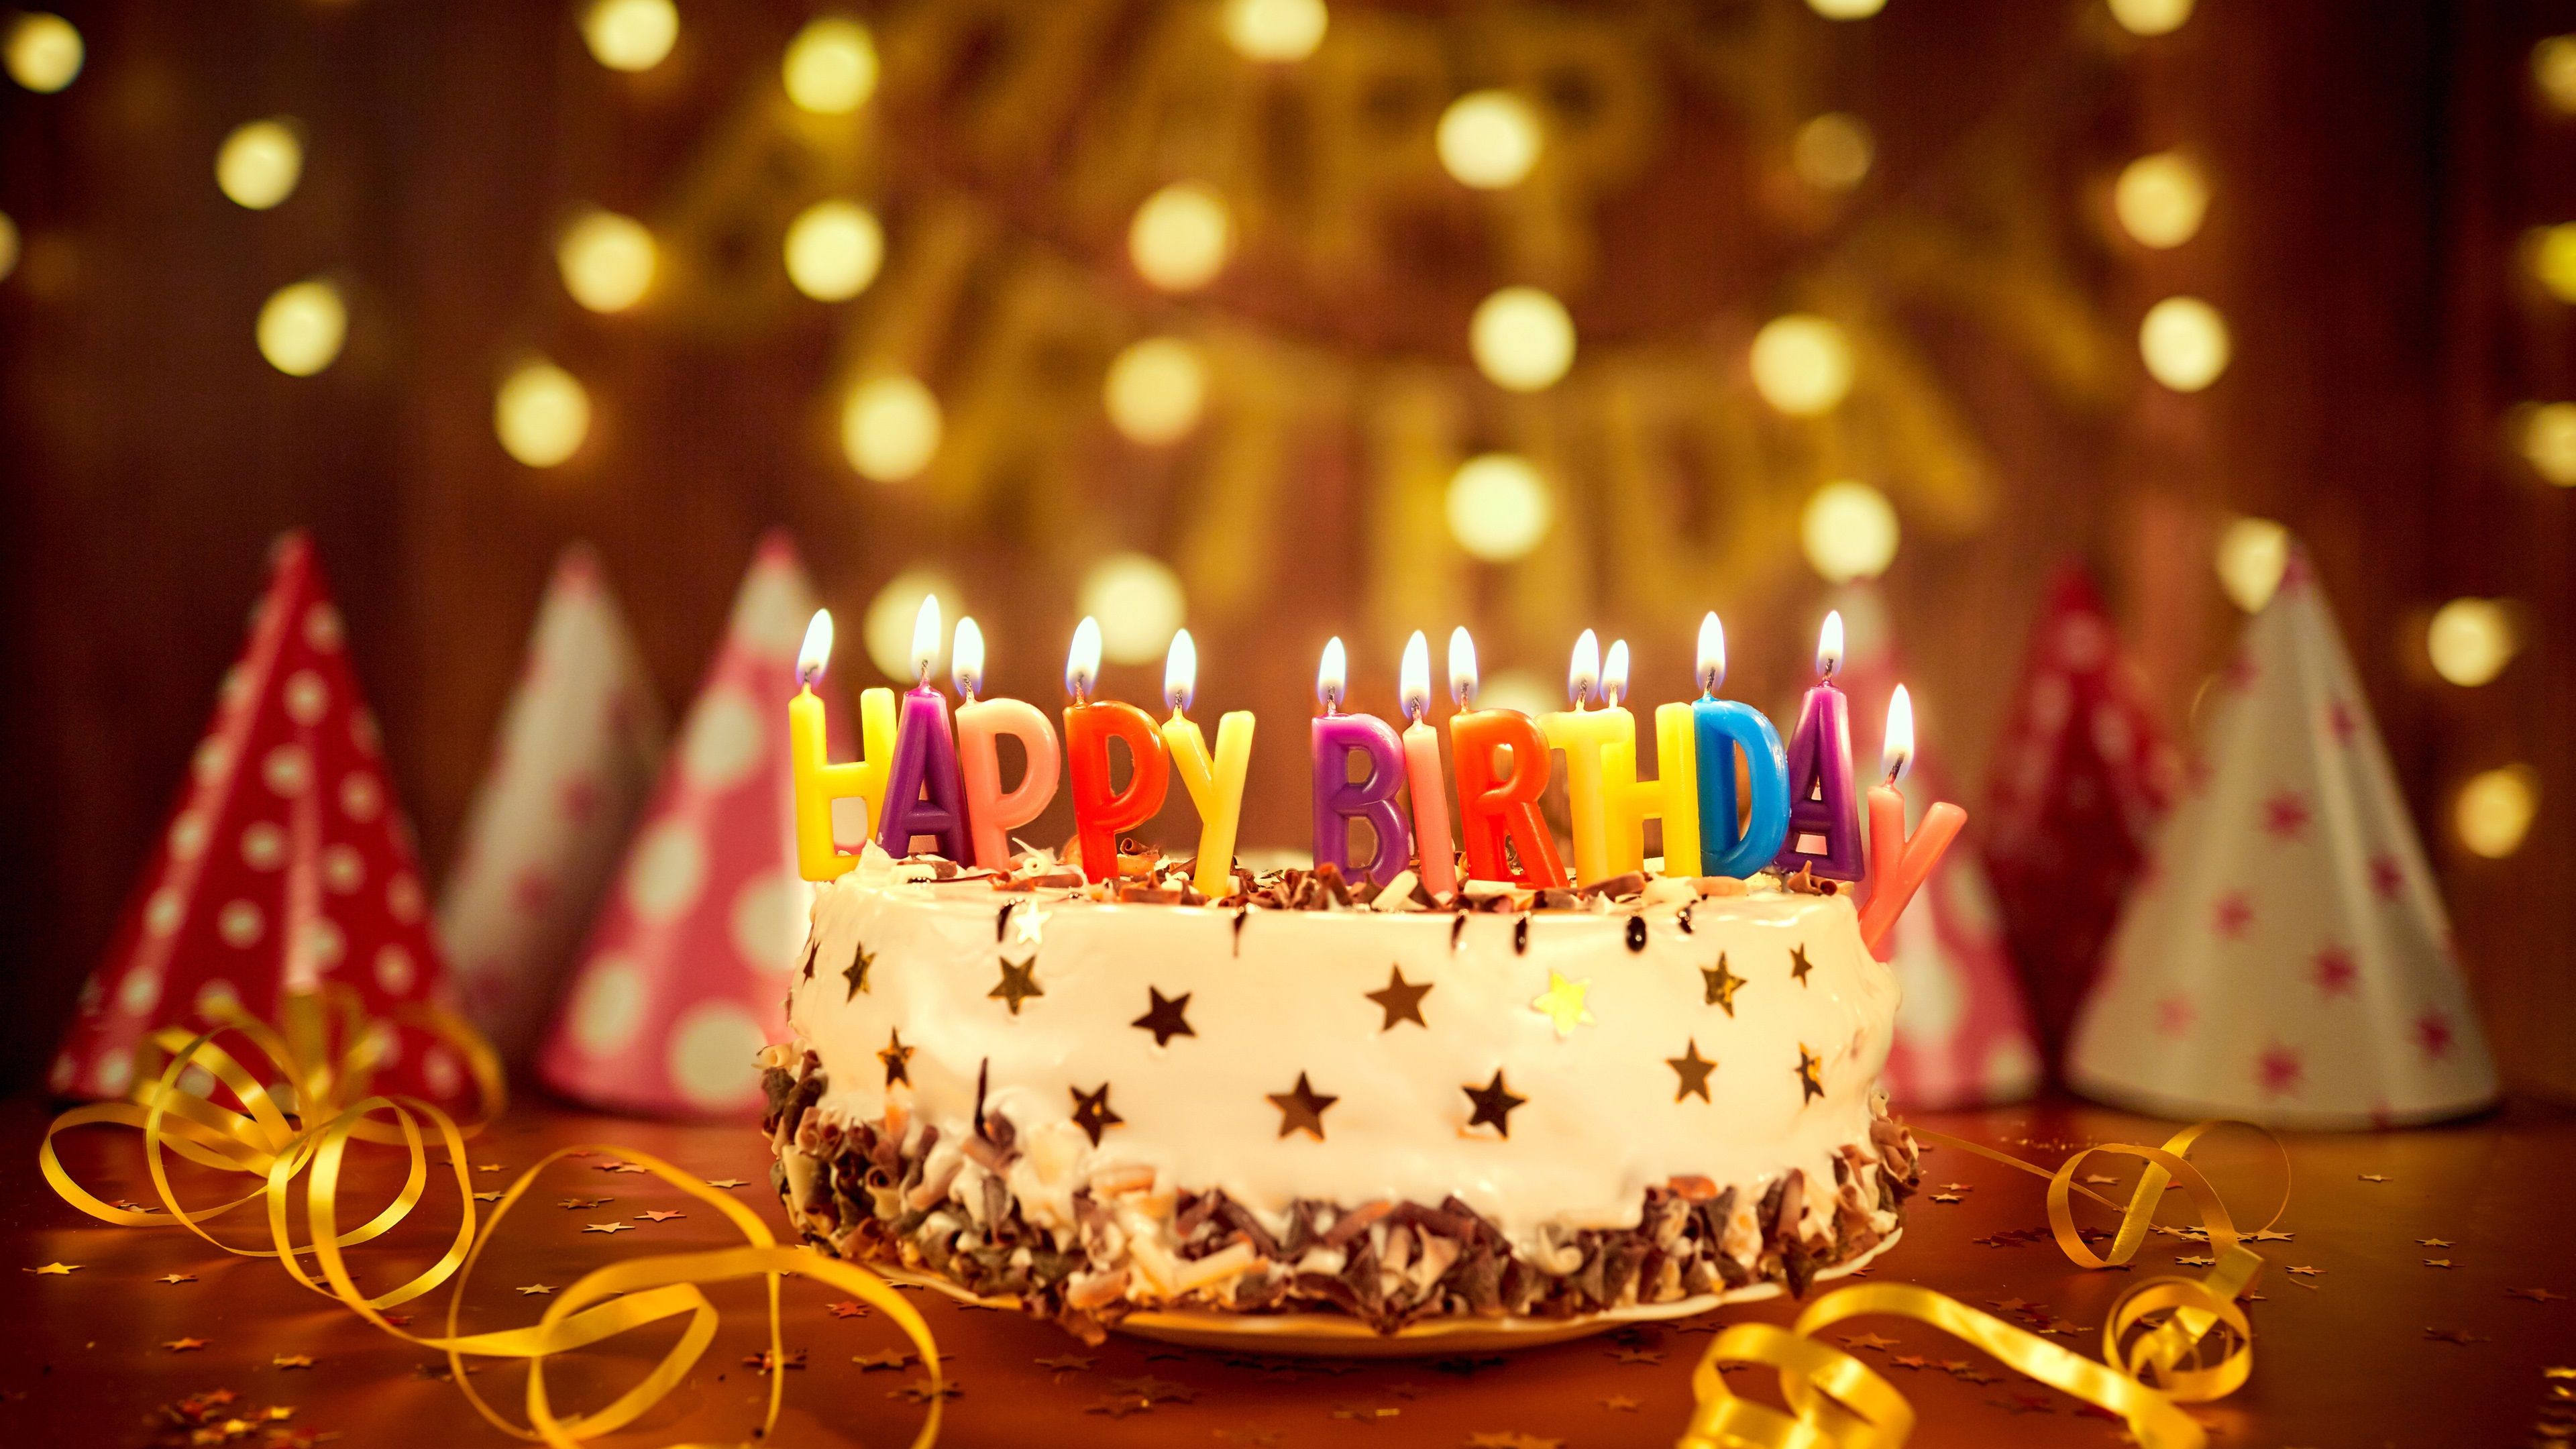 معروف ترین عکس کیک تولد با شمع خوشگل Happy Birthday 